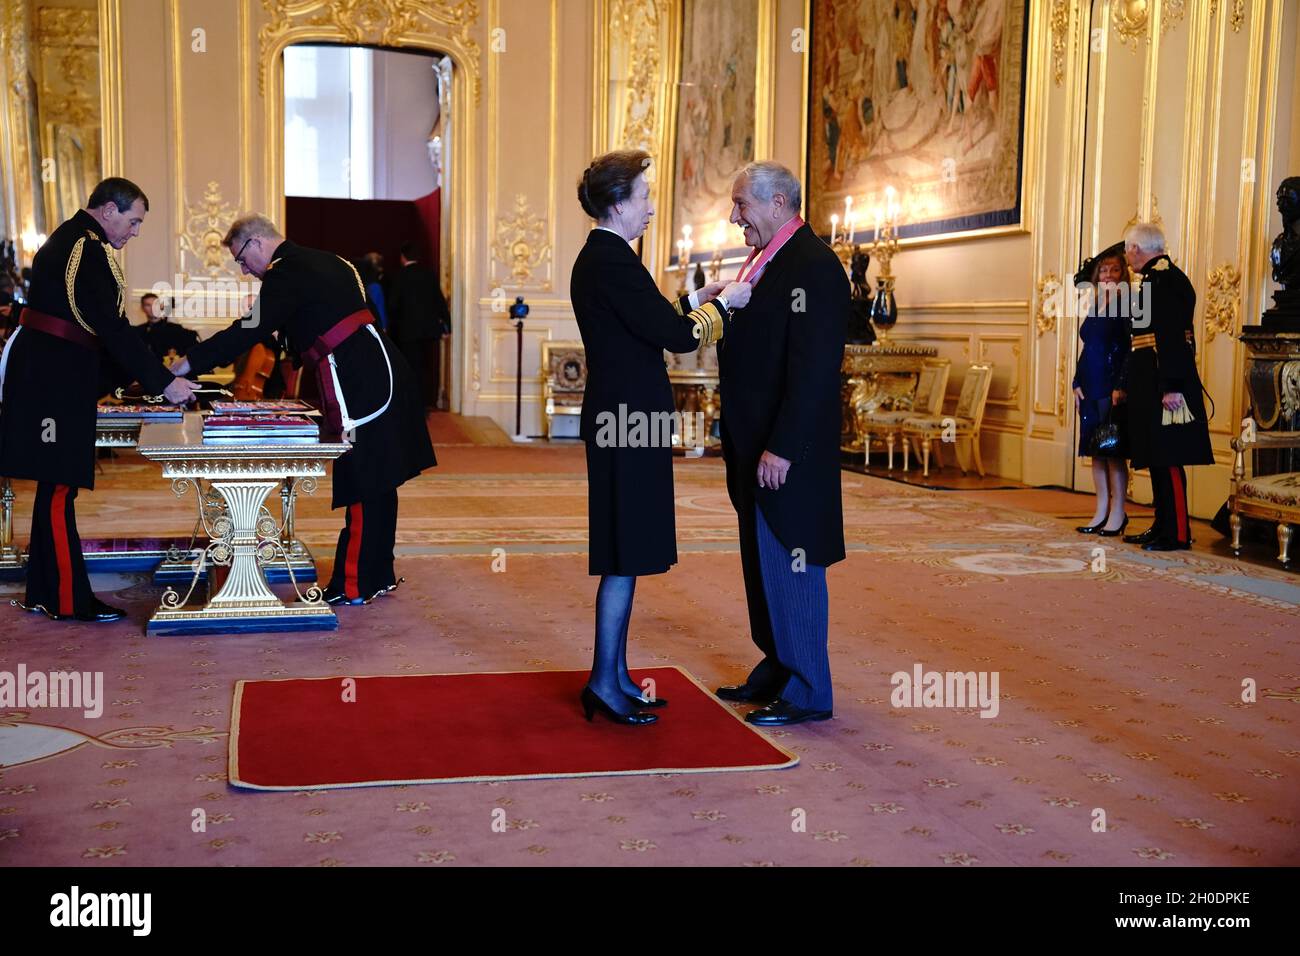 Bob Champion de Newmarket est fait un CBE (commandant de l'ordre de l'Empire britannique) par la princesse Royal au château de Windsor.Date de la photo: Mardi 12 octobre 2021. Banque D'Images